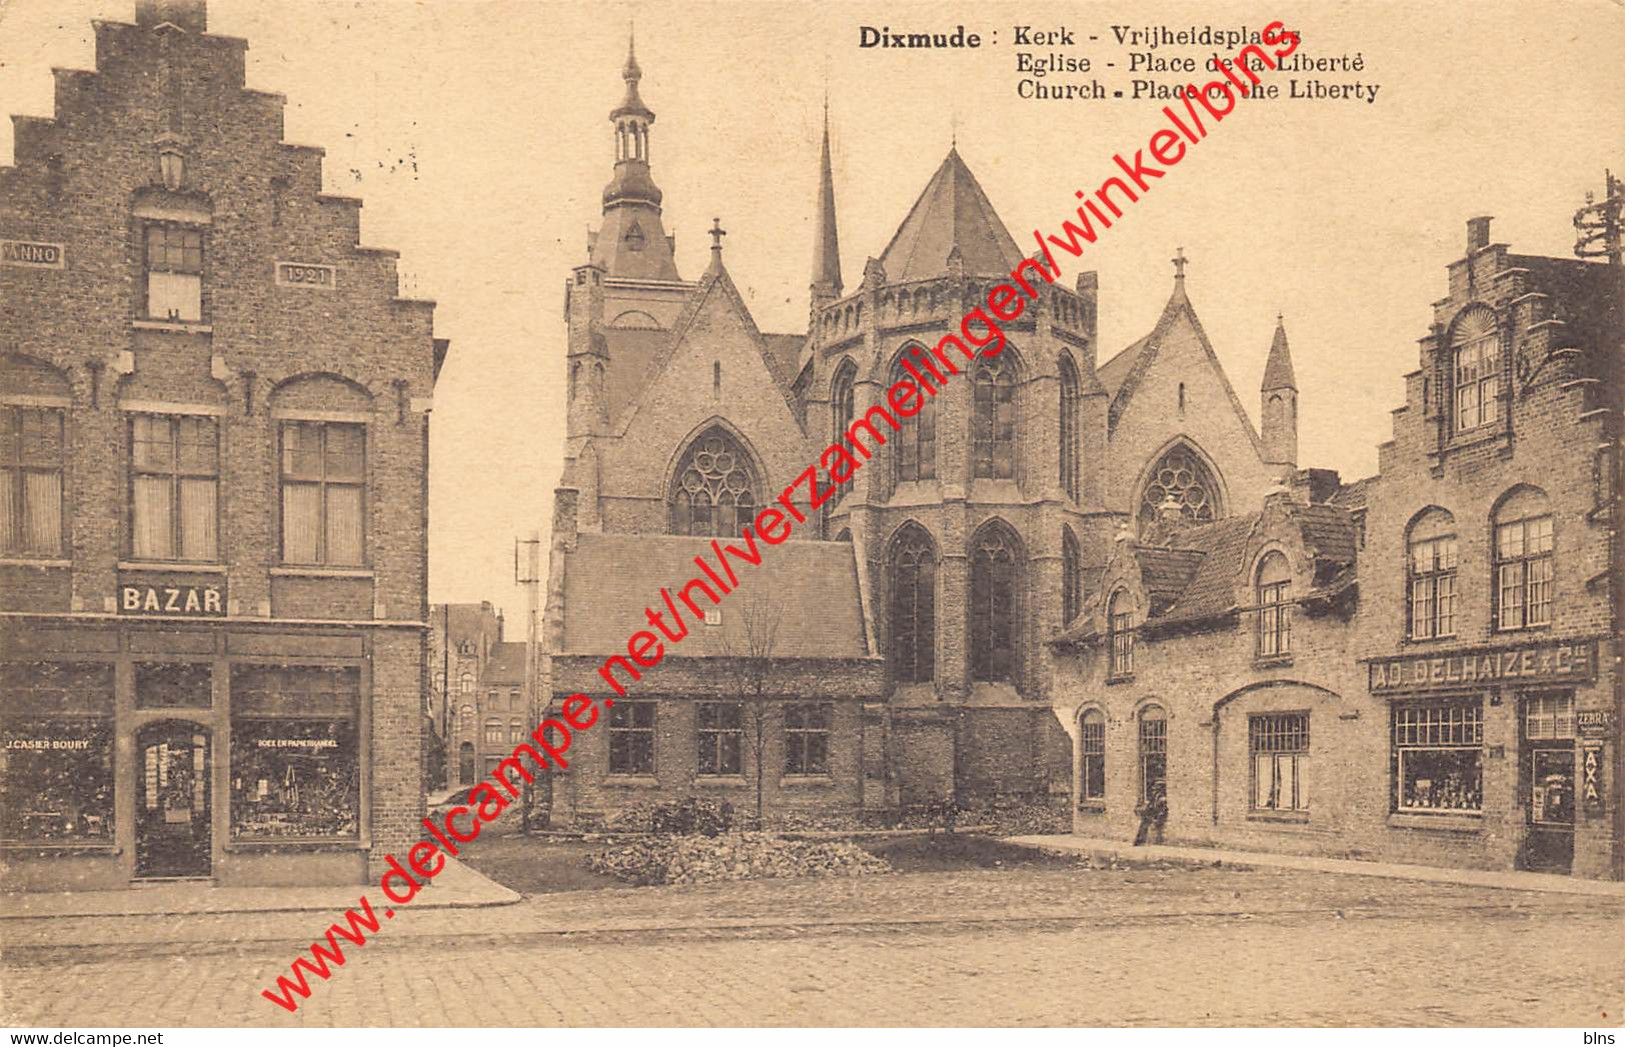 Dixmude - Kerk Vrijheidsplaats - AD Delhaize - Diksmuide - Diksmuide